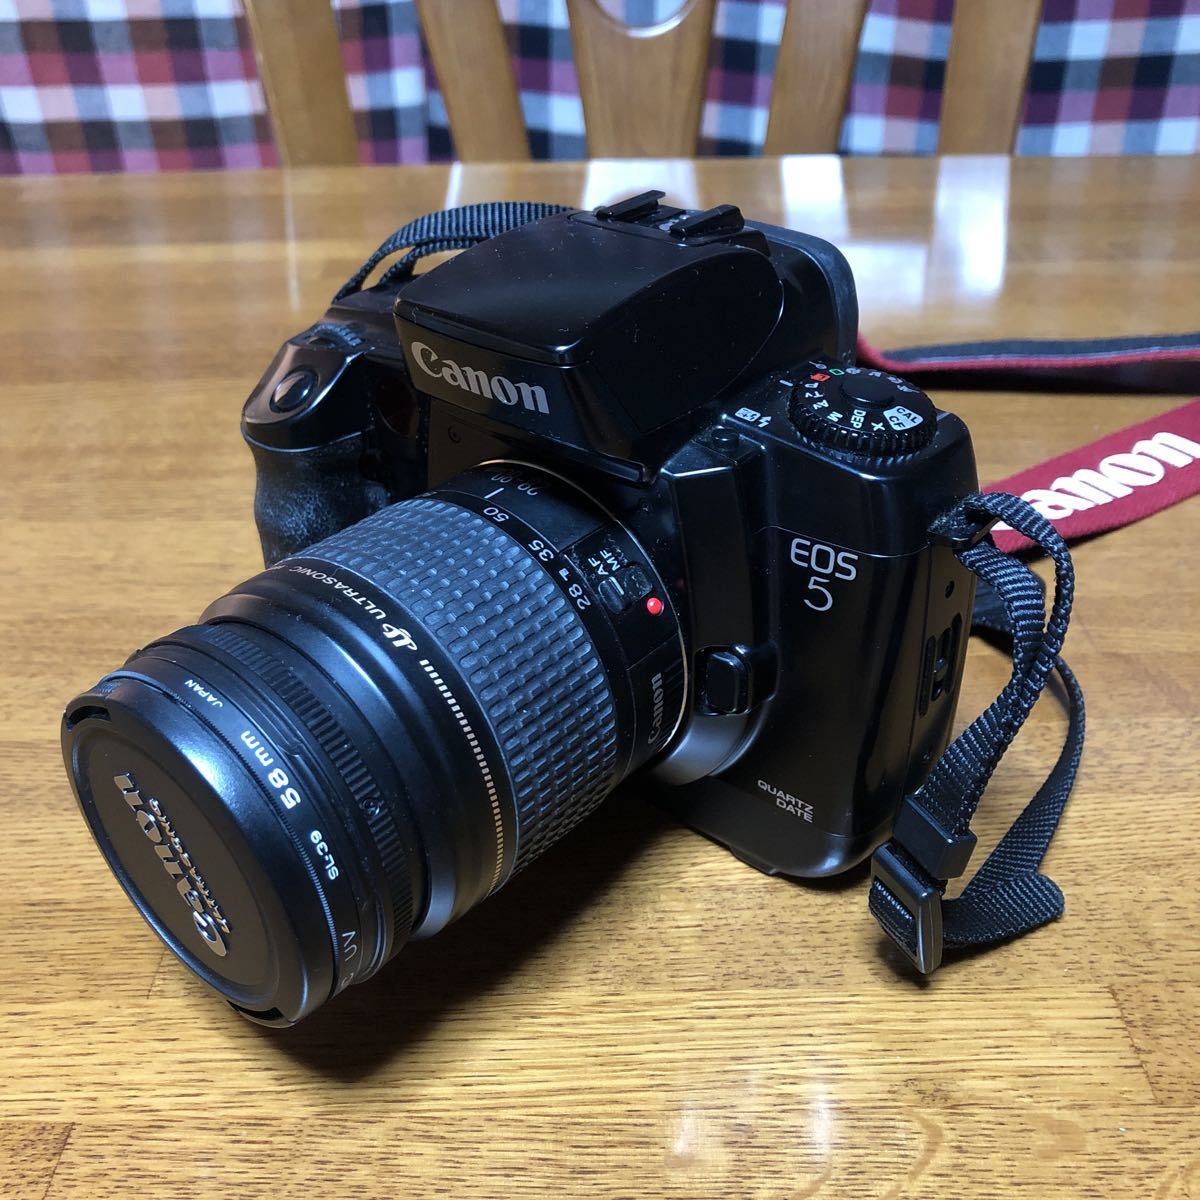 ー品販売 【j】Canon キャノン EOS 5 QUARTZ DATE レンズ 28-80mm